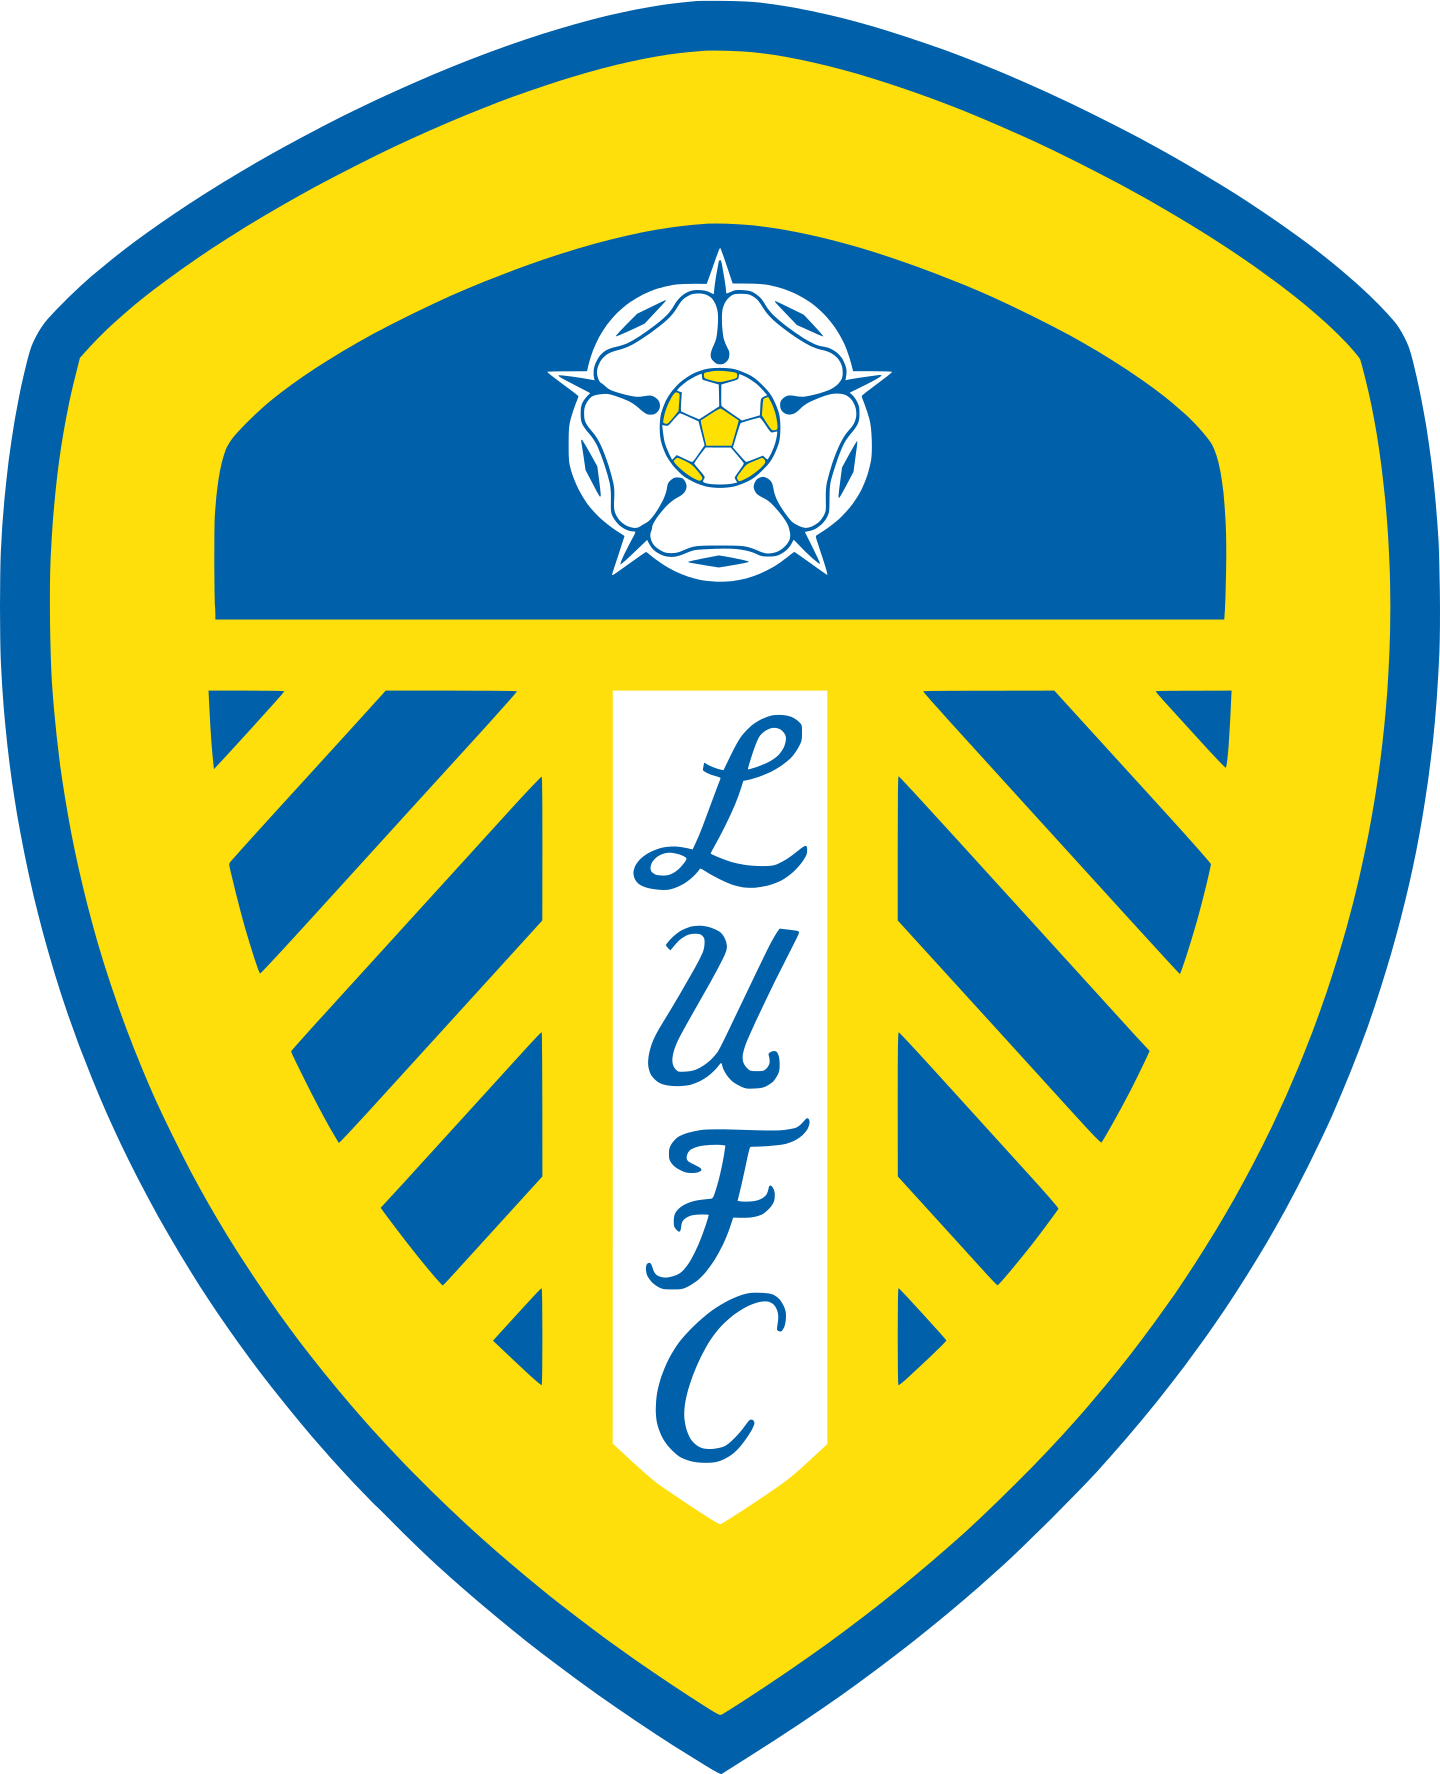 leeds united fc logo 3 - Leeds United FC Logo